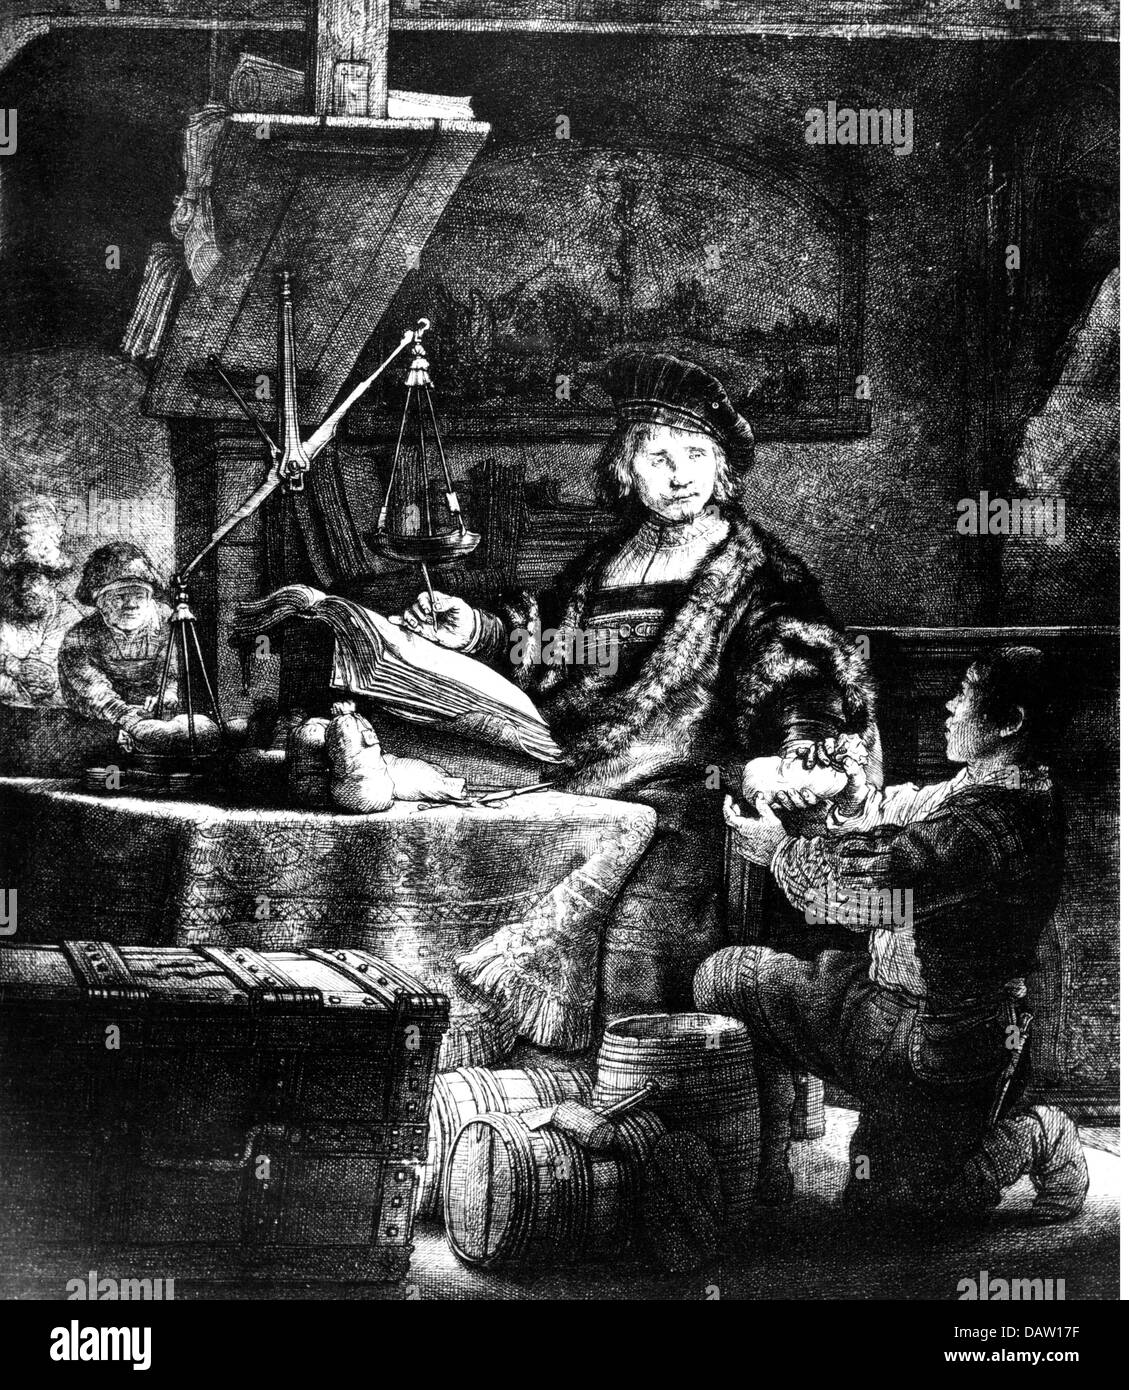 Argent / Finances, intérêts et impôts, 'The Goldweigher', photo du général de l'adhérent fiscal Jan Uytenbogaert, par Rembrandt van Rijn (1606 - 1669), gravure, 1639, droits additionnels-Clearences-non disponible Banque D'Images